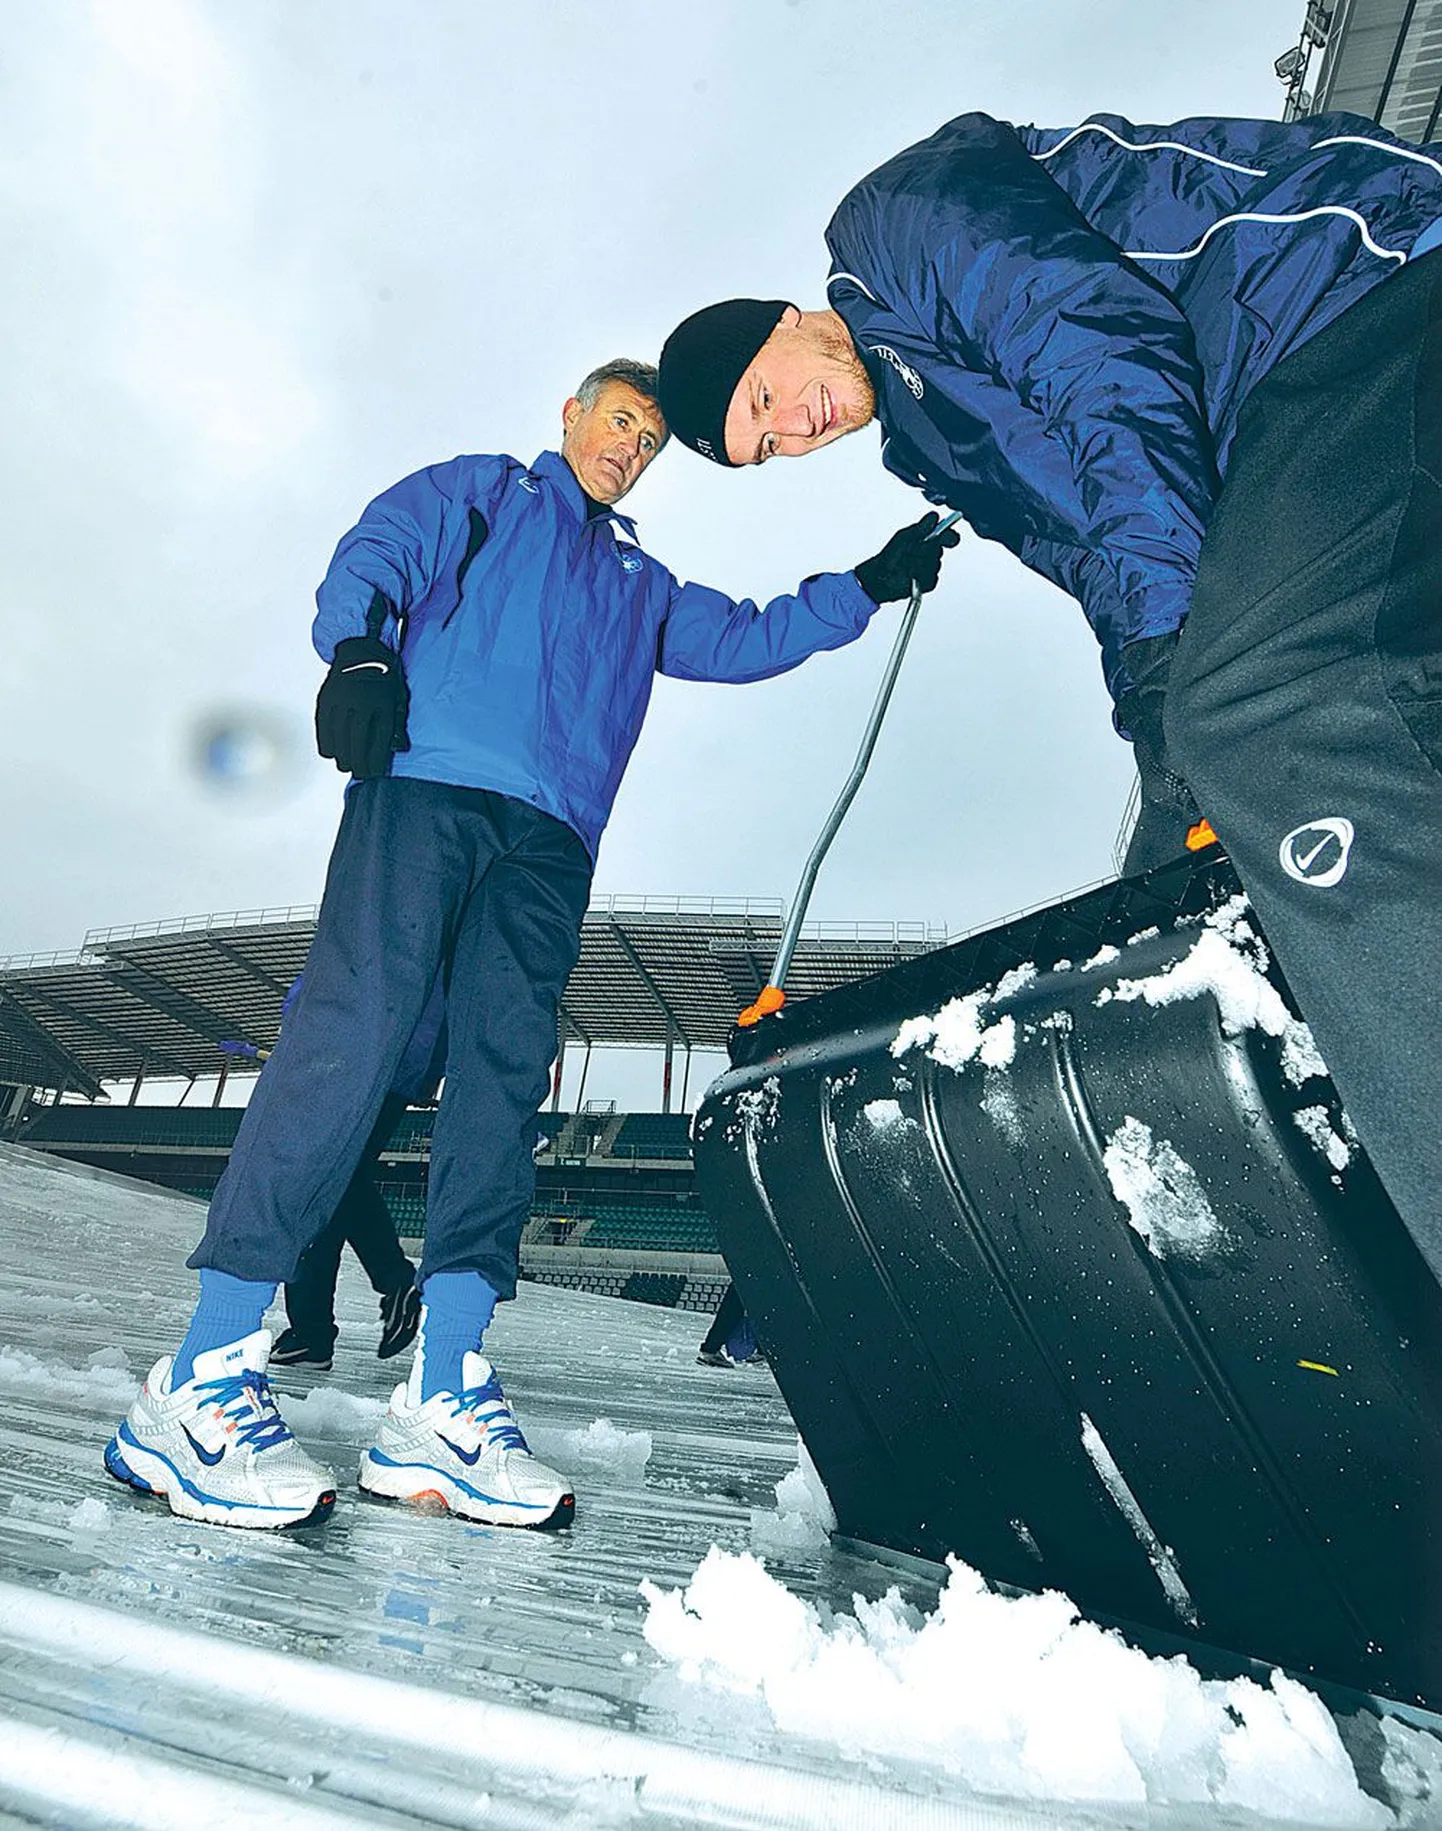 Fredrikstadiga Norra esiliigasse kukkunud Eesti jalgpallikoondislane Raio Piiroja (paremal) ja peatreener Tarmo Rüütli aitasid eile koos kaaslastega Lilleküla staadionit lumest puhastada.